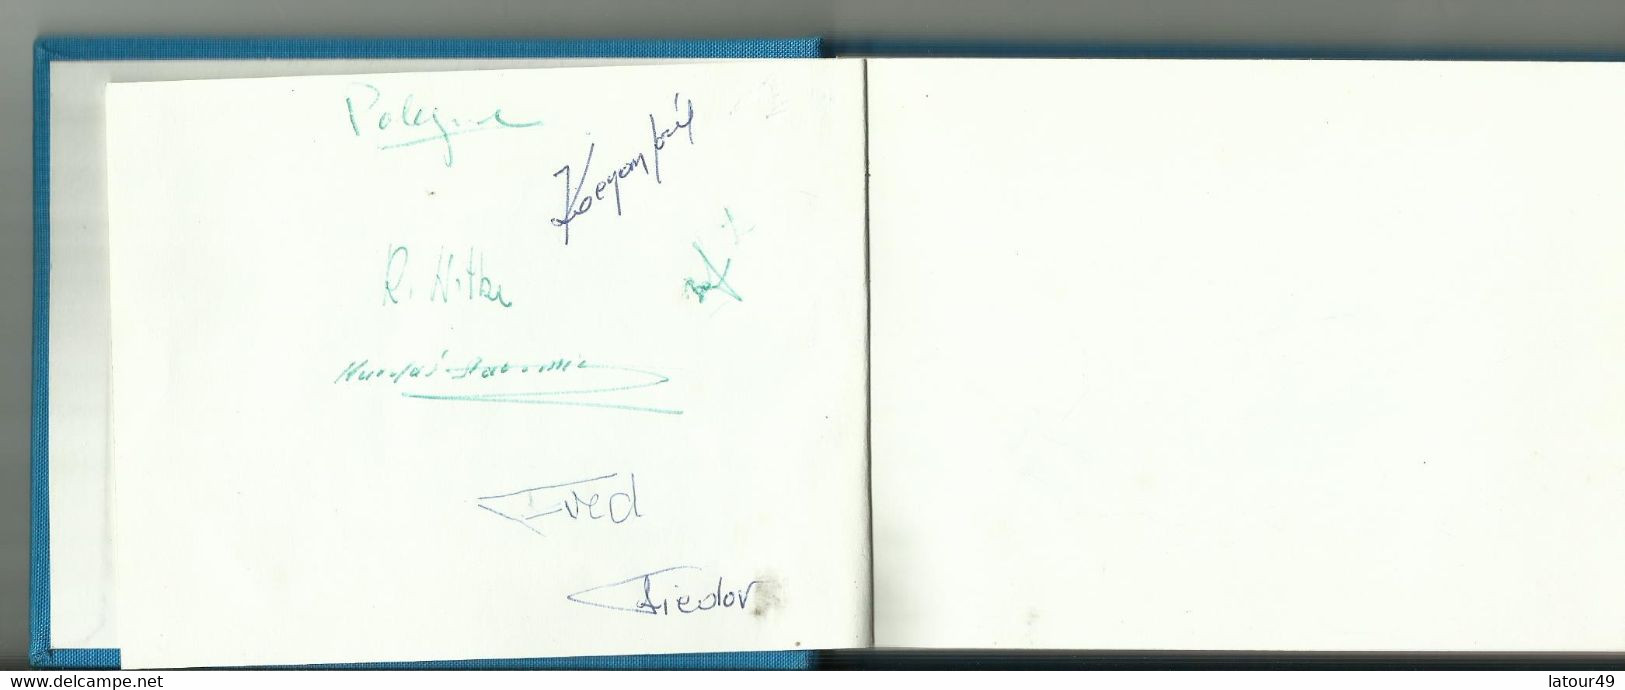 Jeux Olympique Grenoble1968  Autographes Pologne.jozet Kocjan Crwin Fredor Etc. Norvege Bjorn Wirkola Porte Drapeau Etc - Authographs